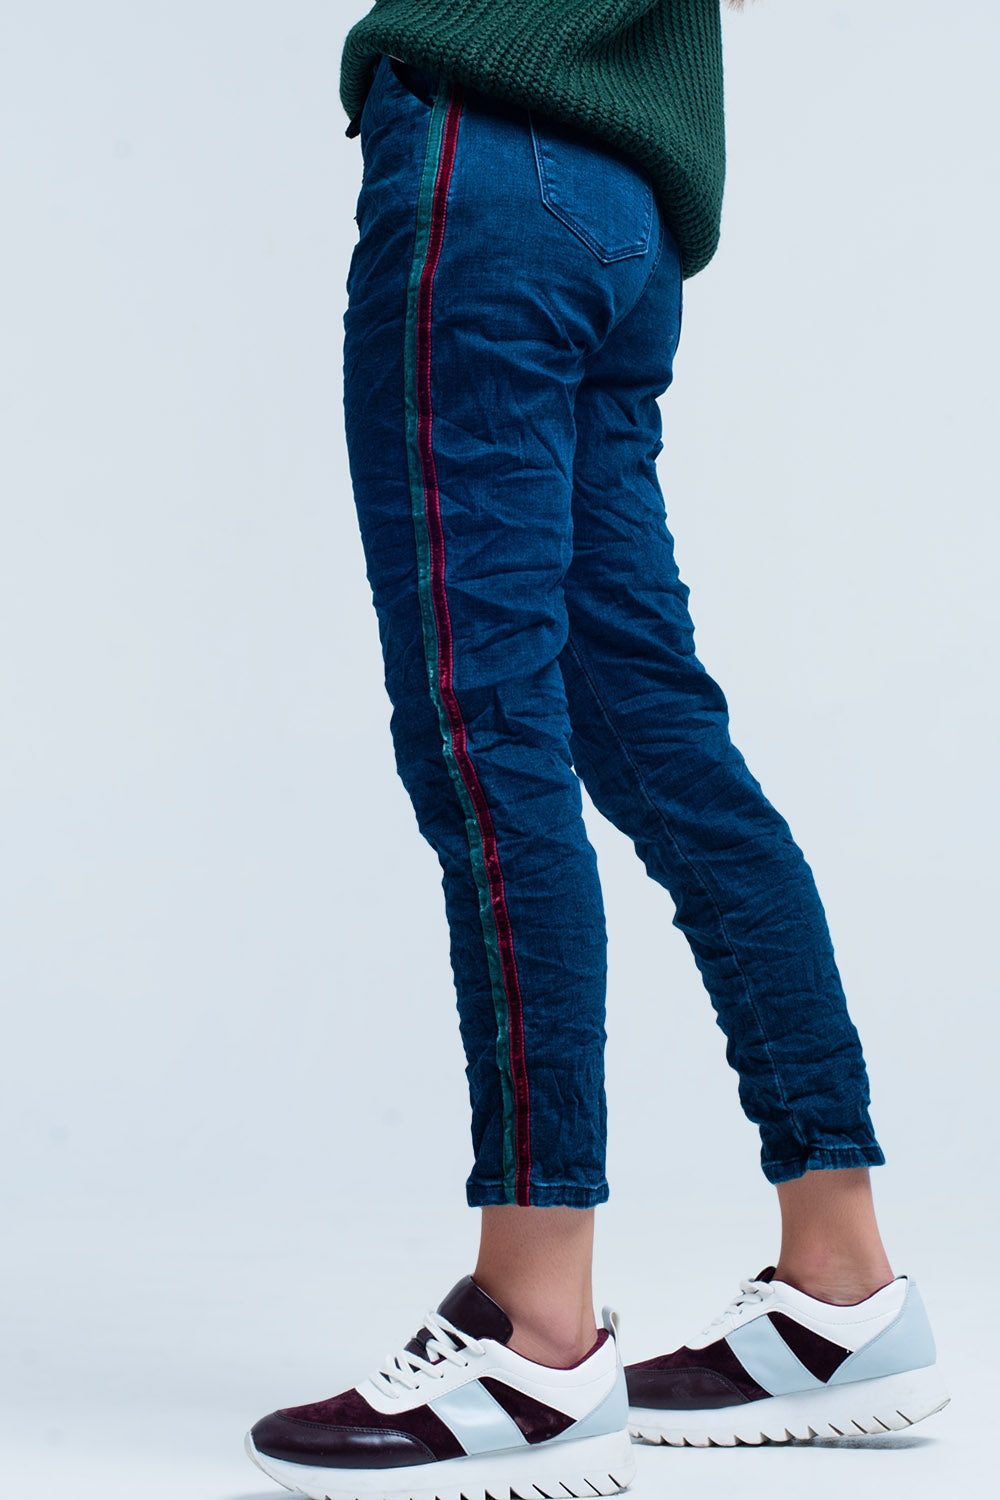 Q2 Blue Baggy Jeans multi-color side stripe